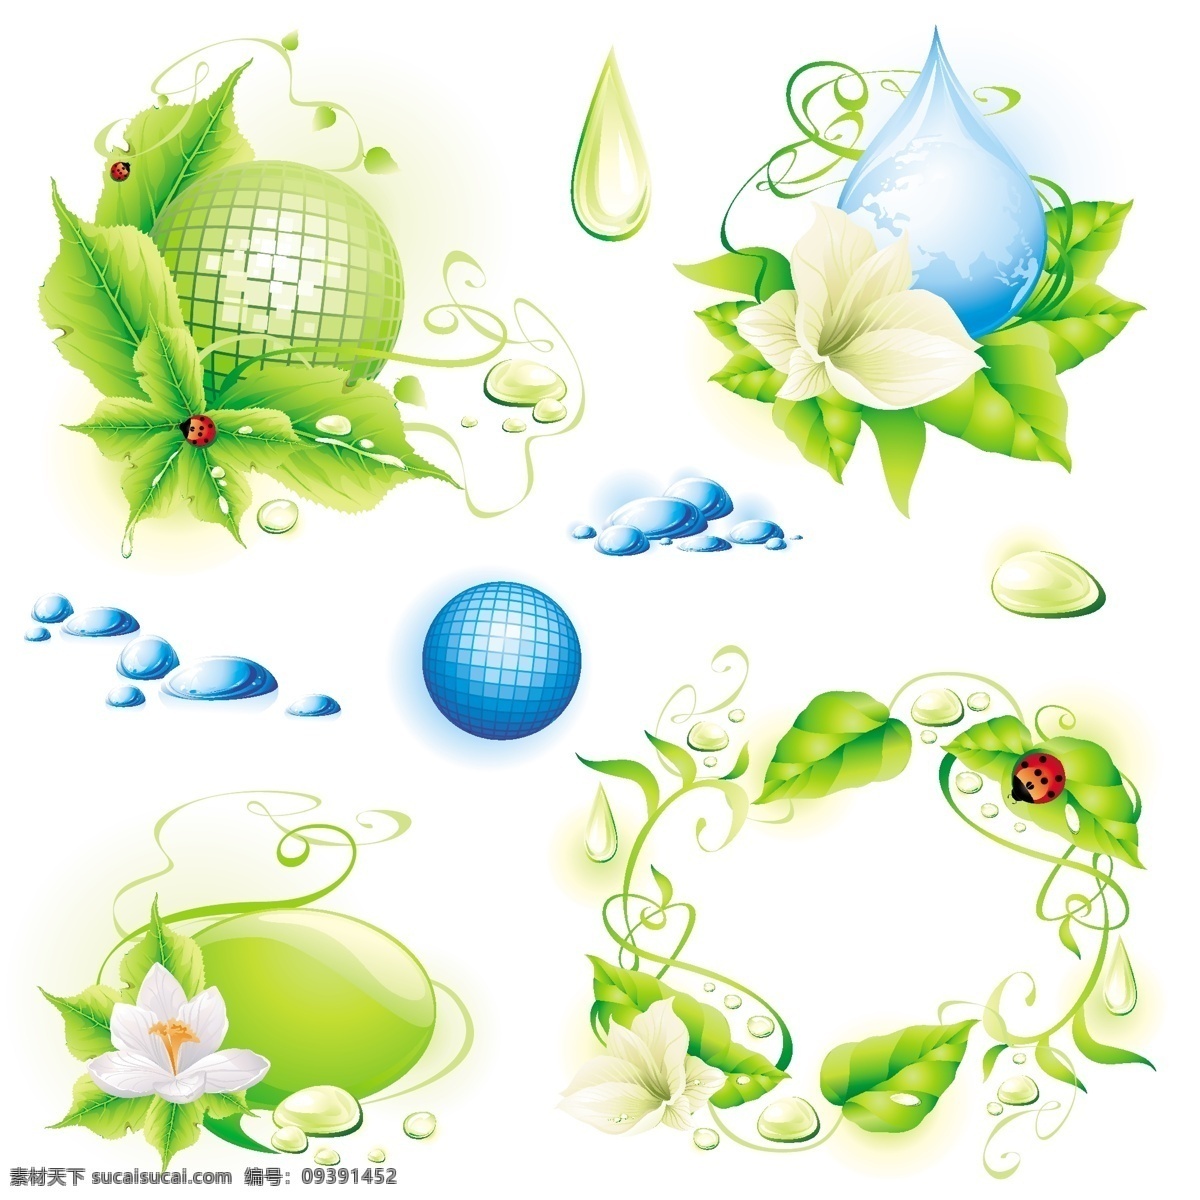 环保 主题 矢量 保护环境 材料 地球 花卉 环境 昆虫 绿色 七星瓢虫 水滴 枝晶 绿色的树叶 载体